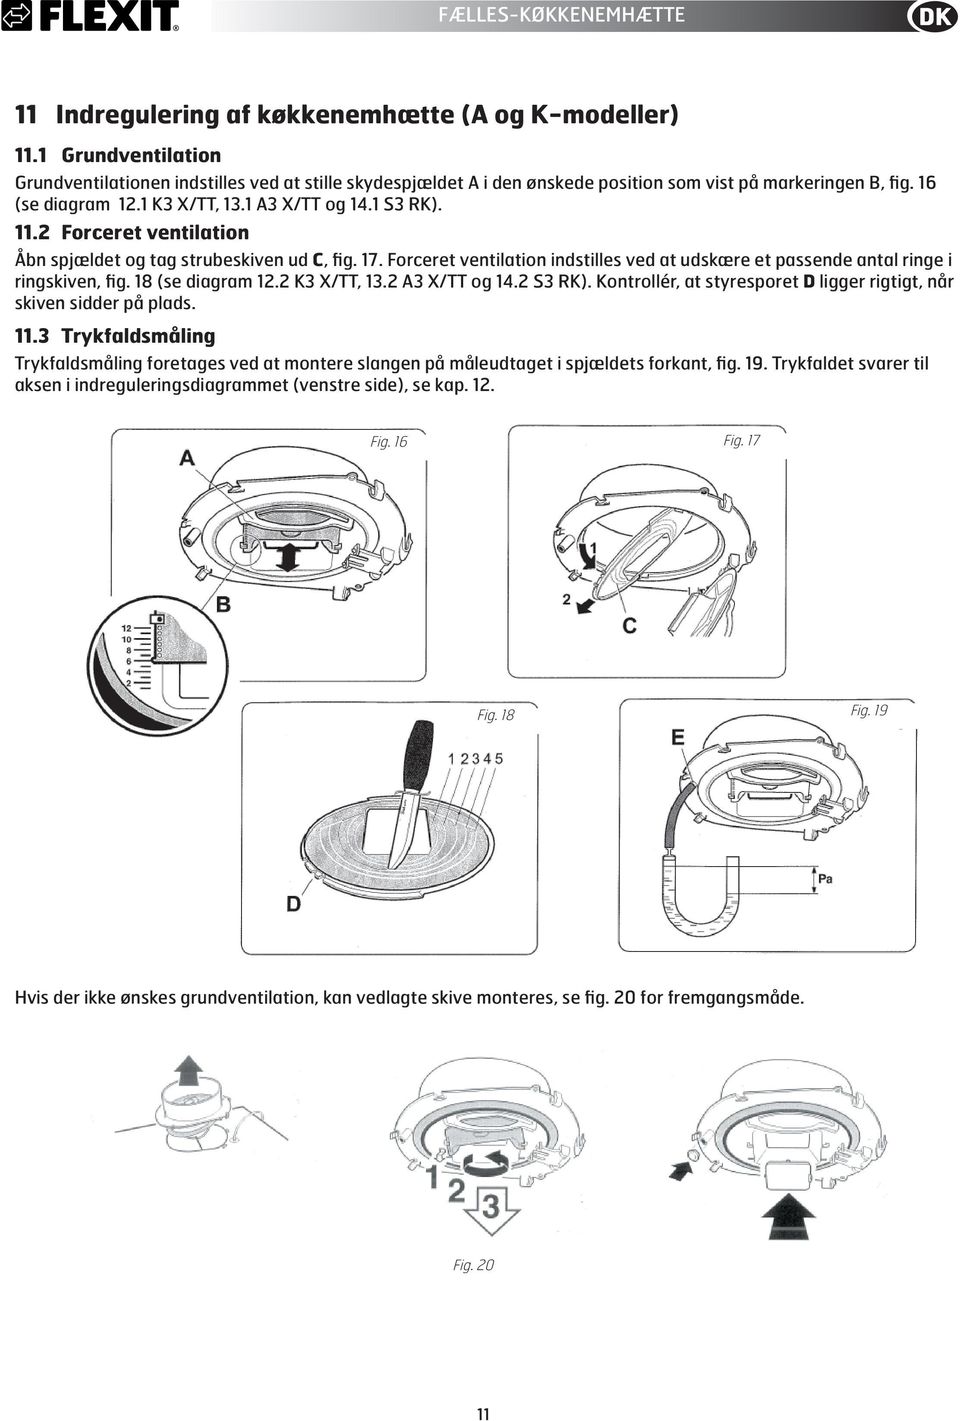 Forceret ventilation Åbn spjældet og tag strubeskiven ud C, fig. 17. Forceret ventilation indstilles ved at udskære et passende antal ringe i ringskiven, fig. 18 (se diagram 1. K3 X/TT, 13.